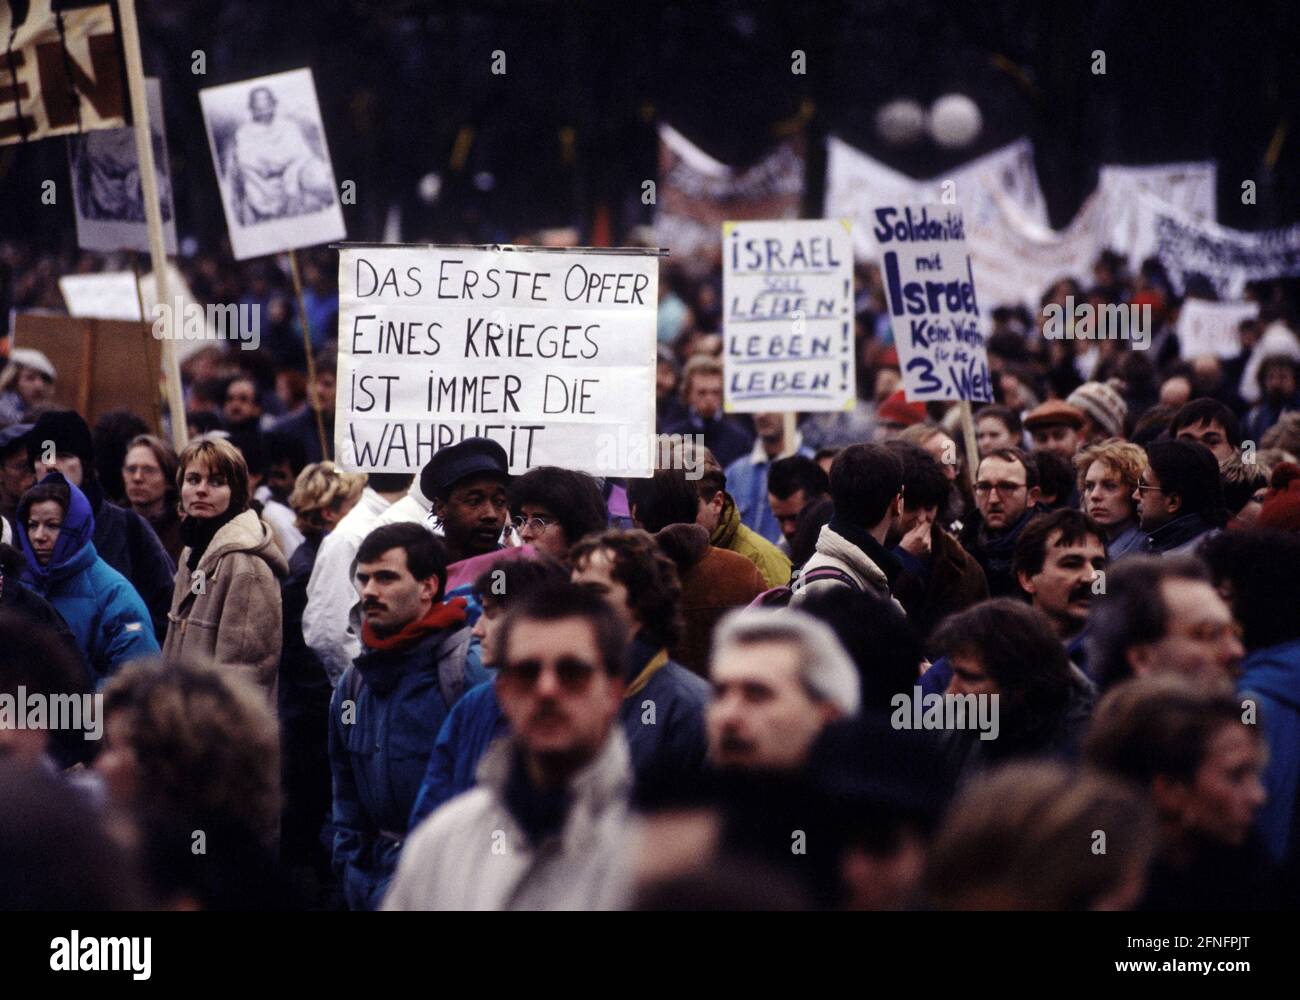 DEU , ALLEMAGNE : démonstration contre la guerre du Golfe pour la libération du Koweït / Démo paix , janvier 1991 [traduction automatique] Banque D'Images